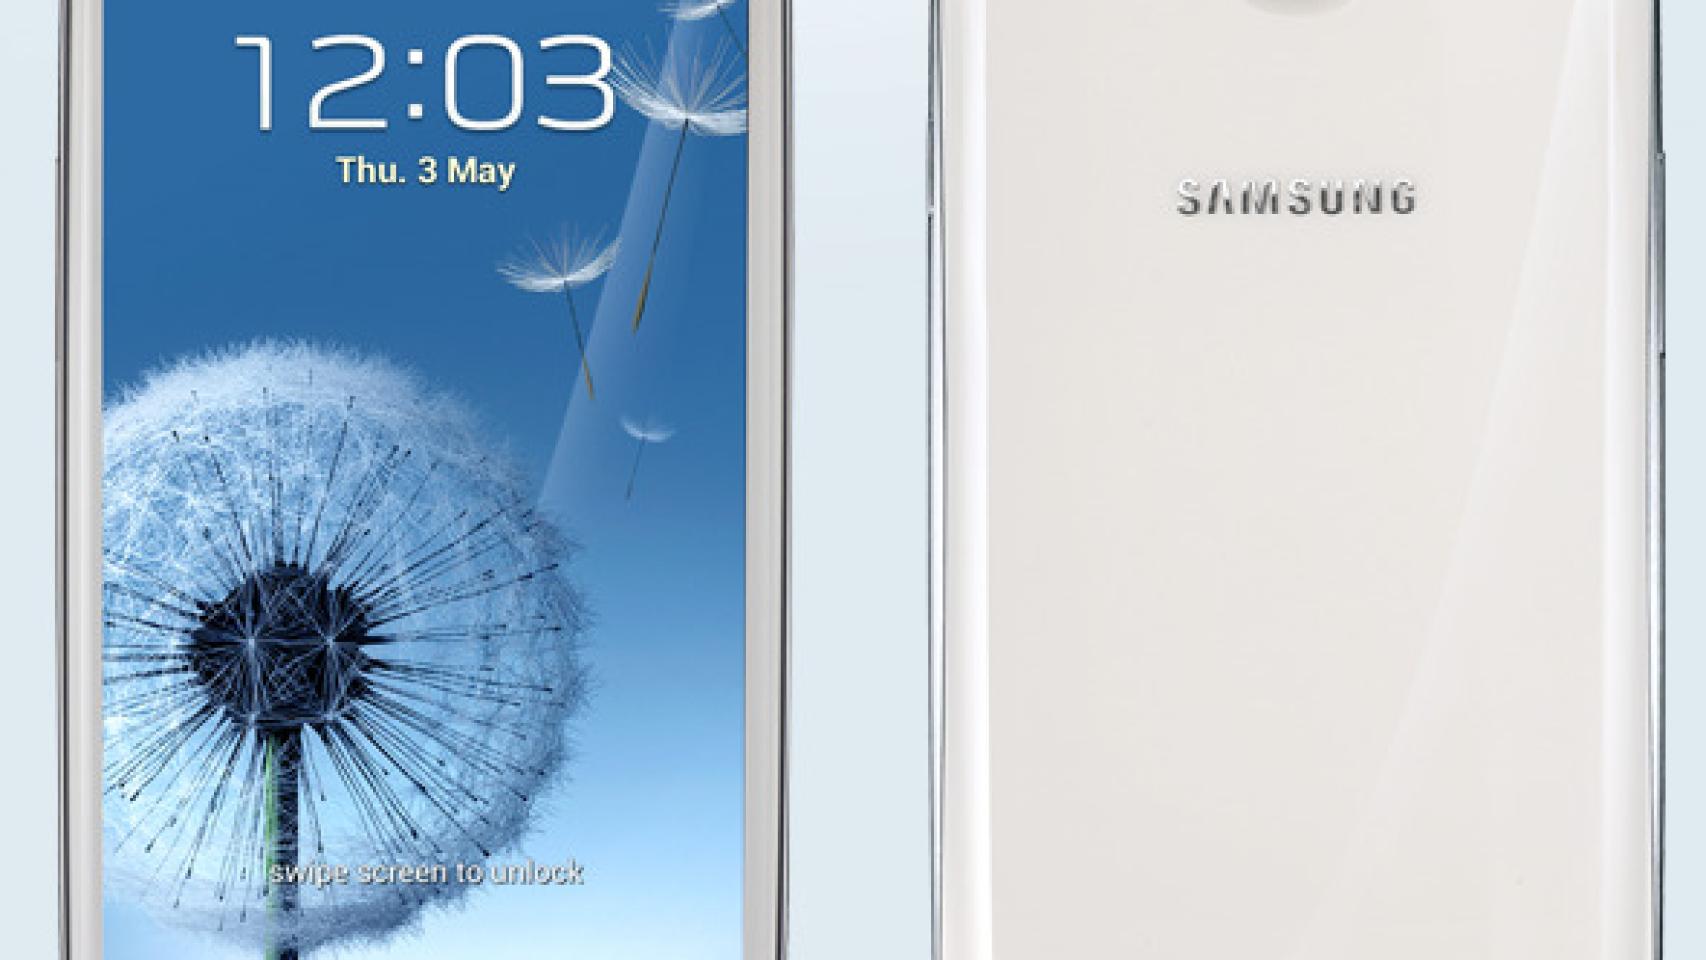 Samsung Galaxy S III ya disponible con Vodafone desde 0€